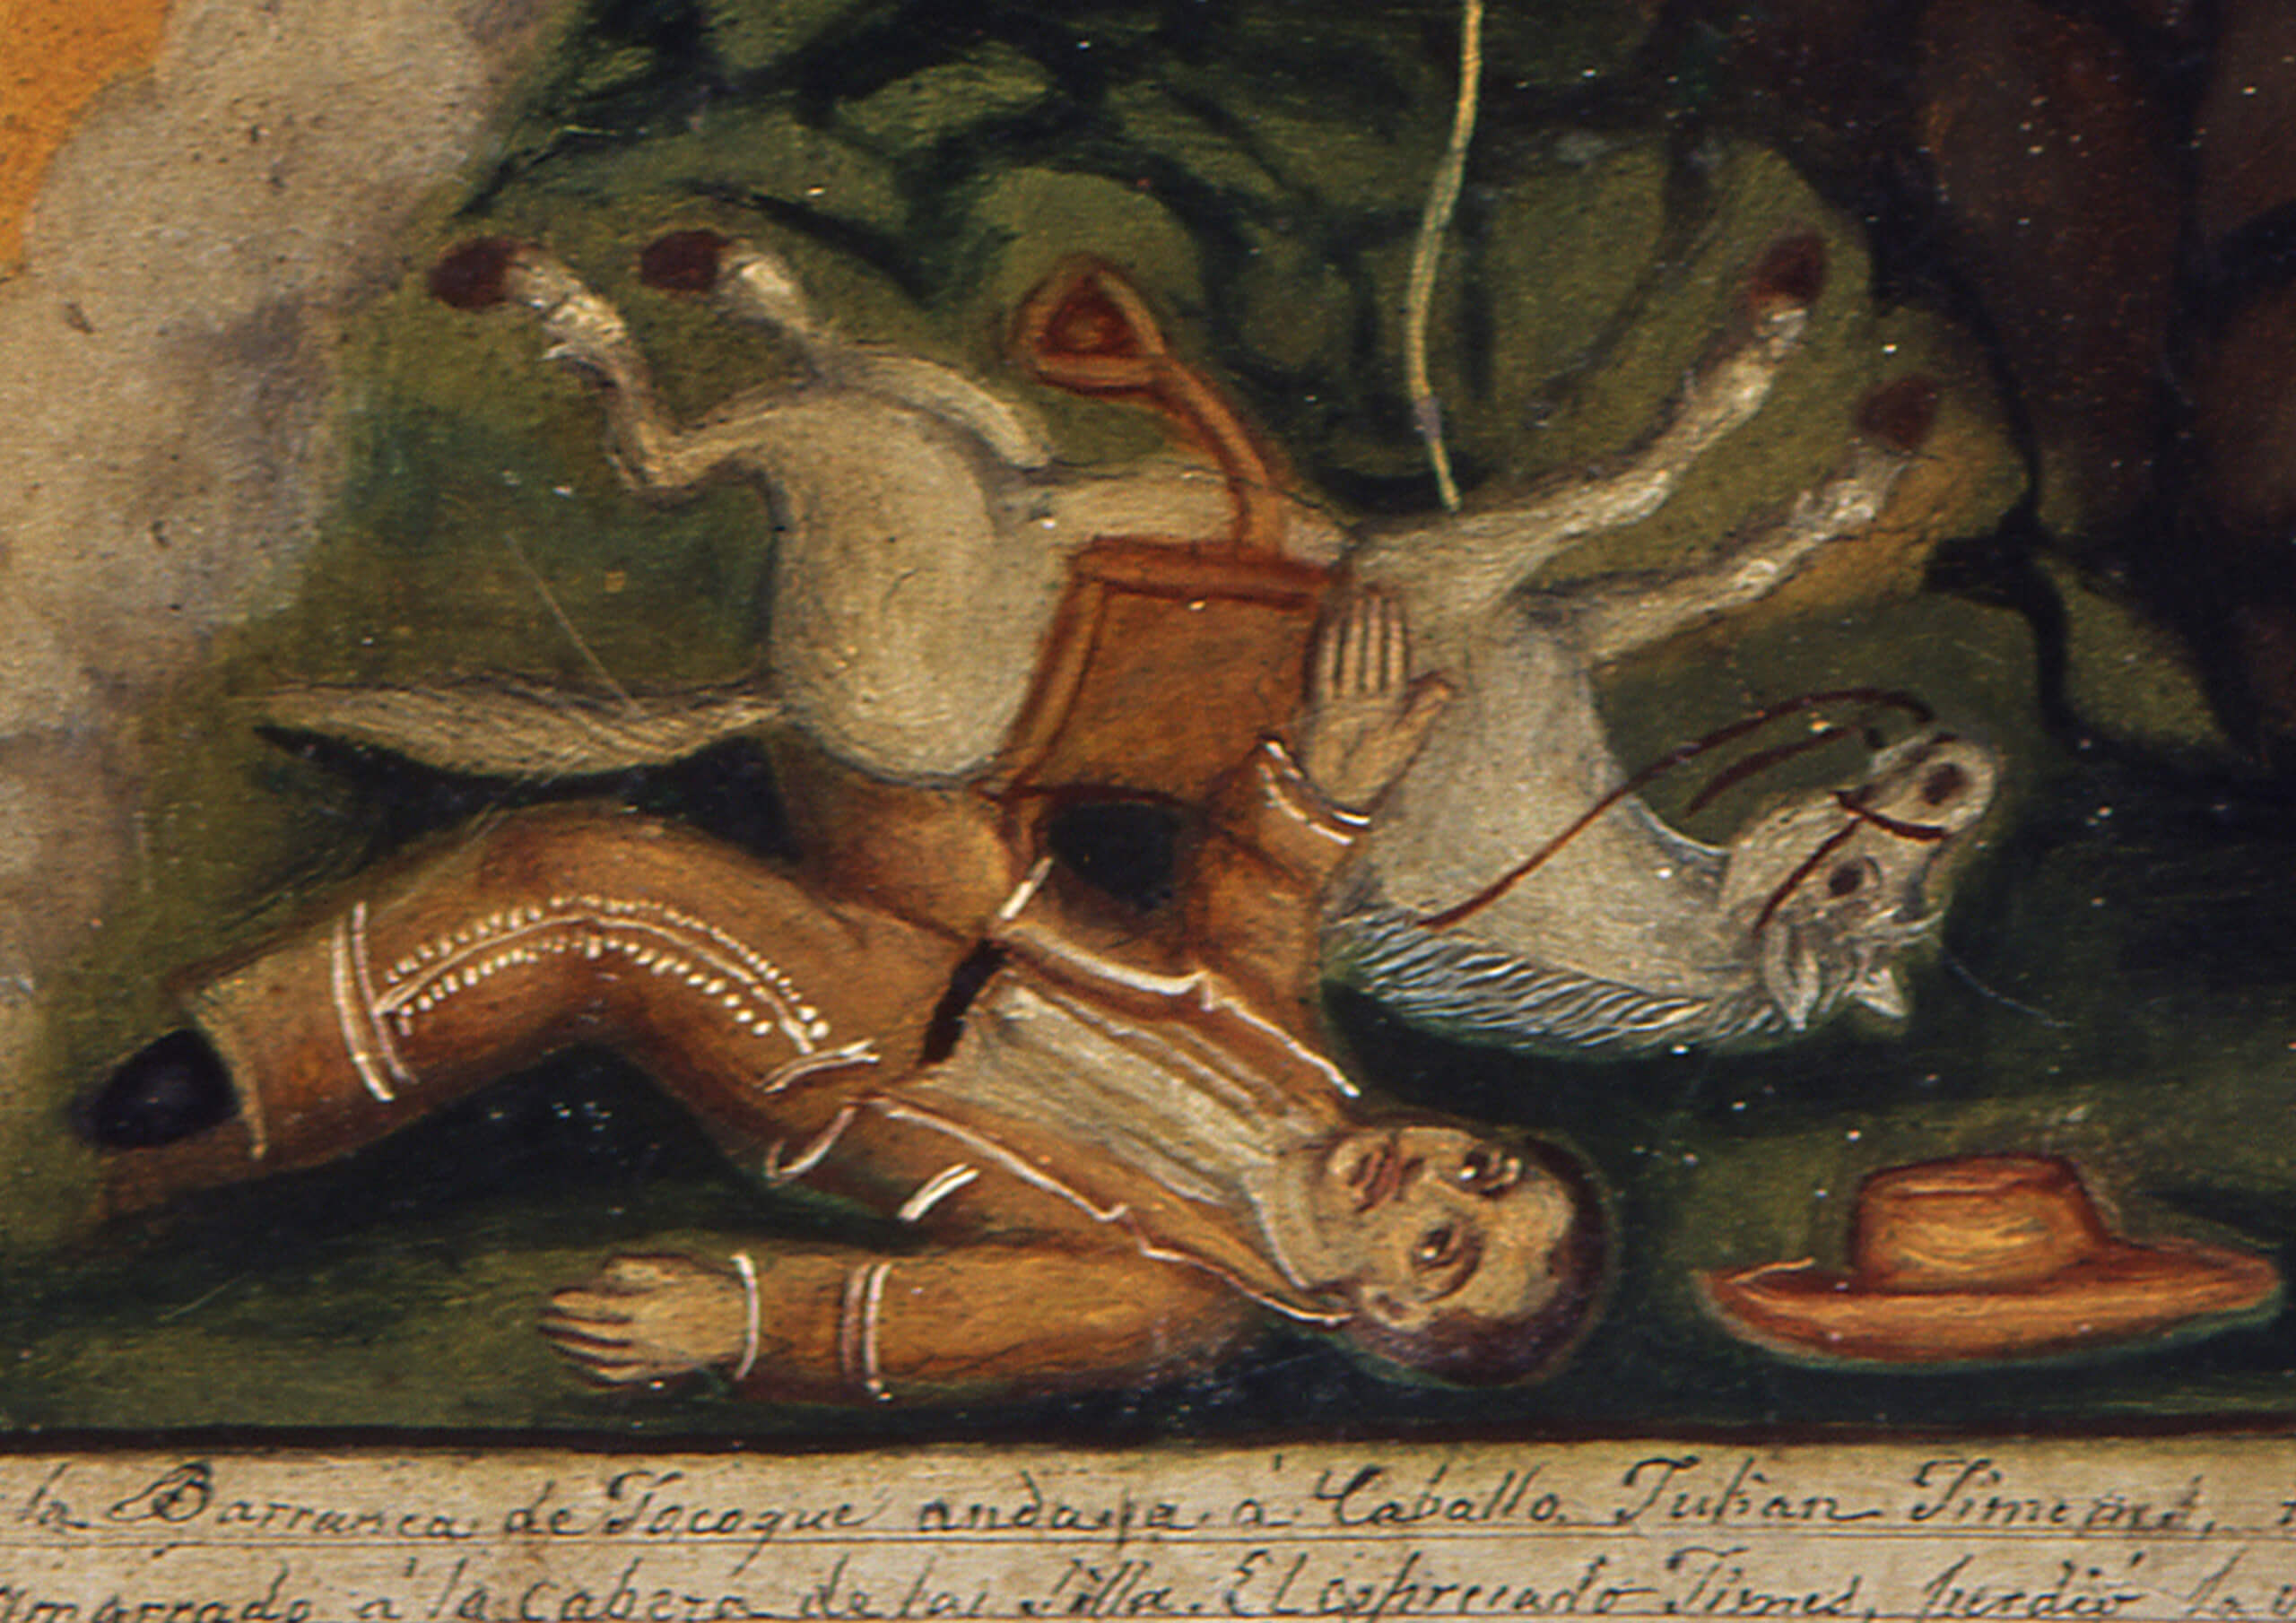 Retablo al Señor del Bautisterio | Testimonios de fe: Colección de Exvotos del Museo Amparo | Museo Amparo, Puebla